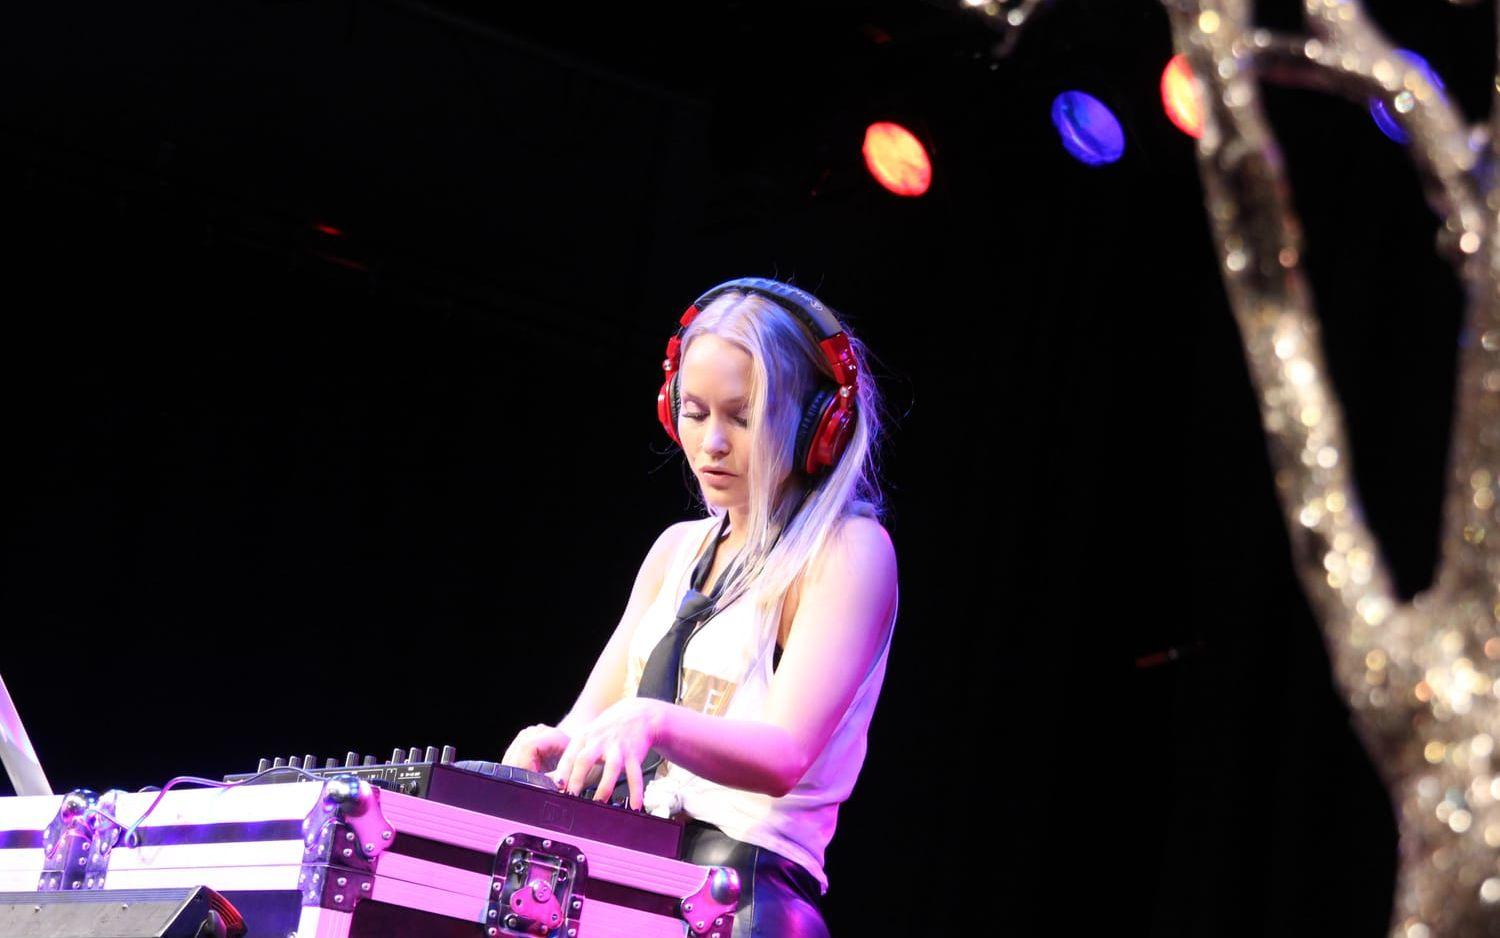 Melisha Linnell jobbar som musikproducent och även som dj. Bild: Nils von Matern.